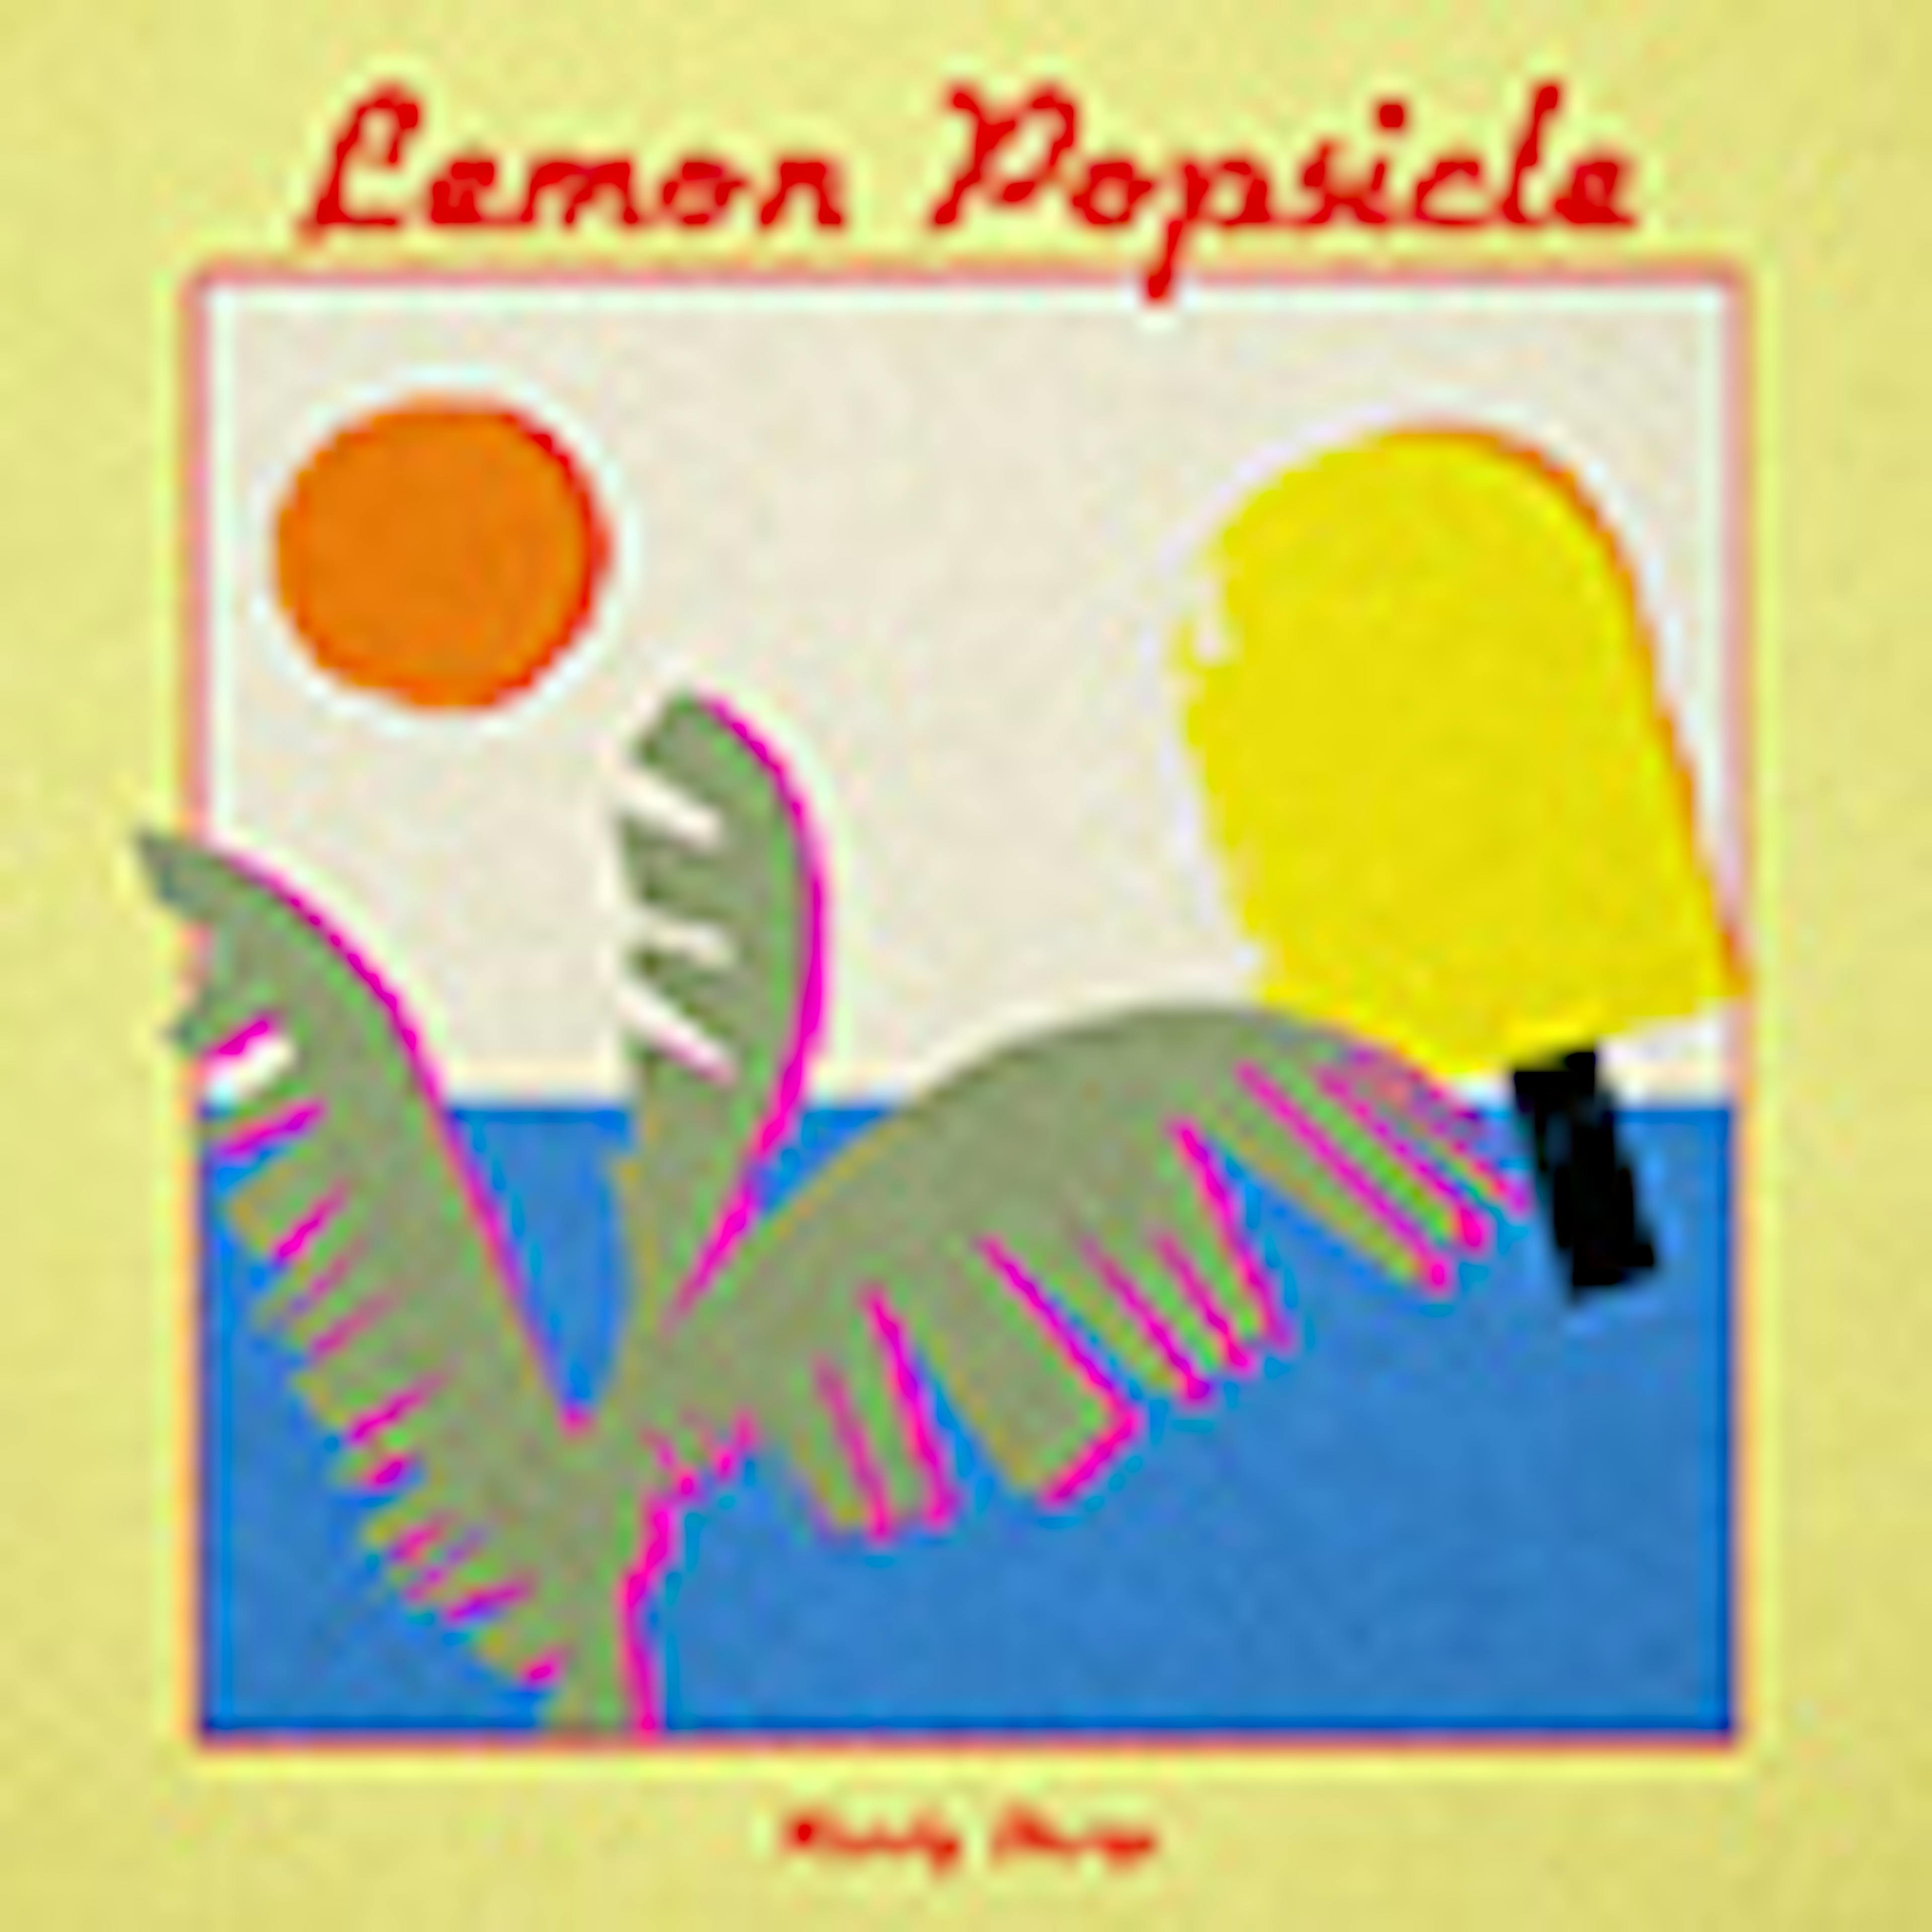 Lemon Popsicle album cover